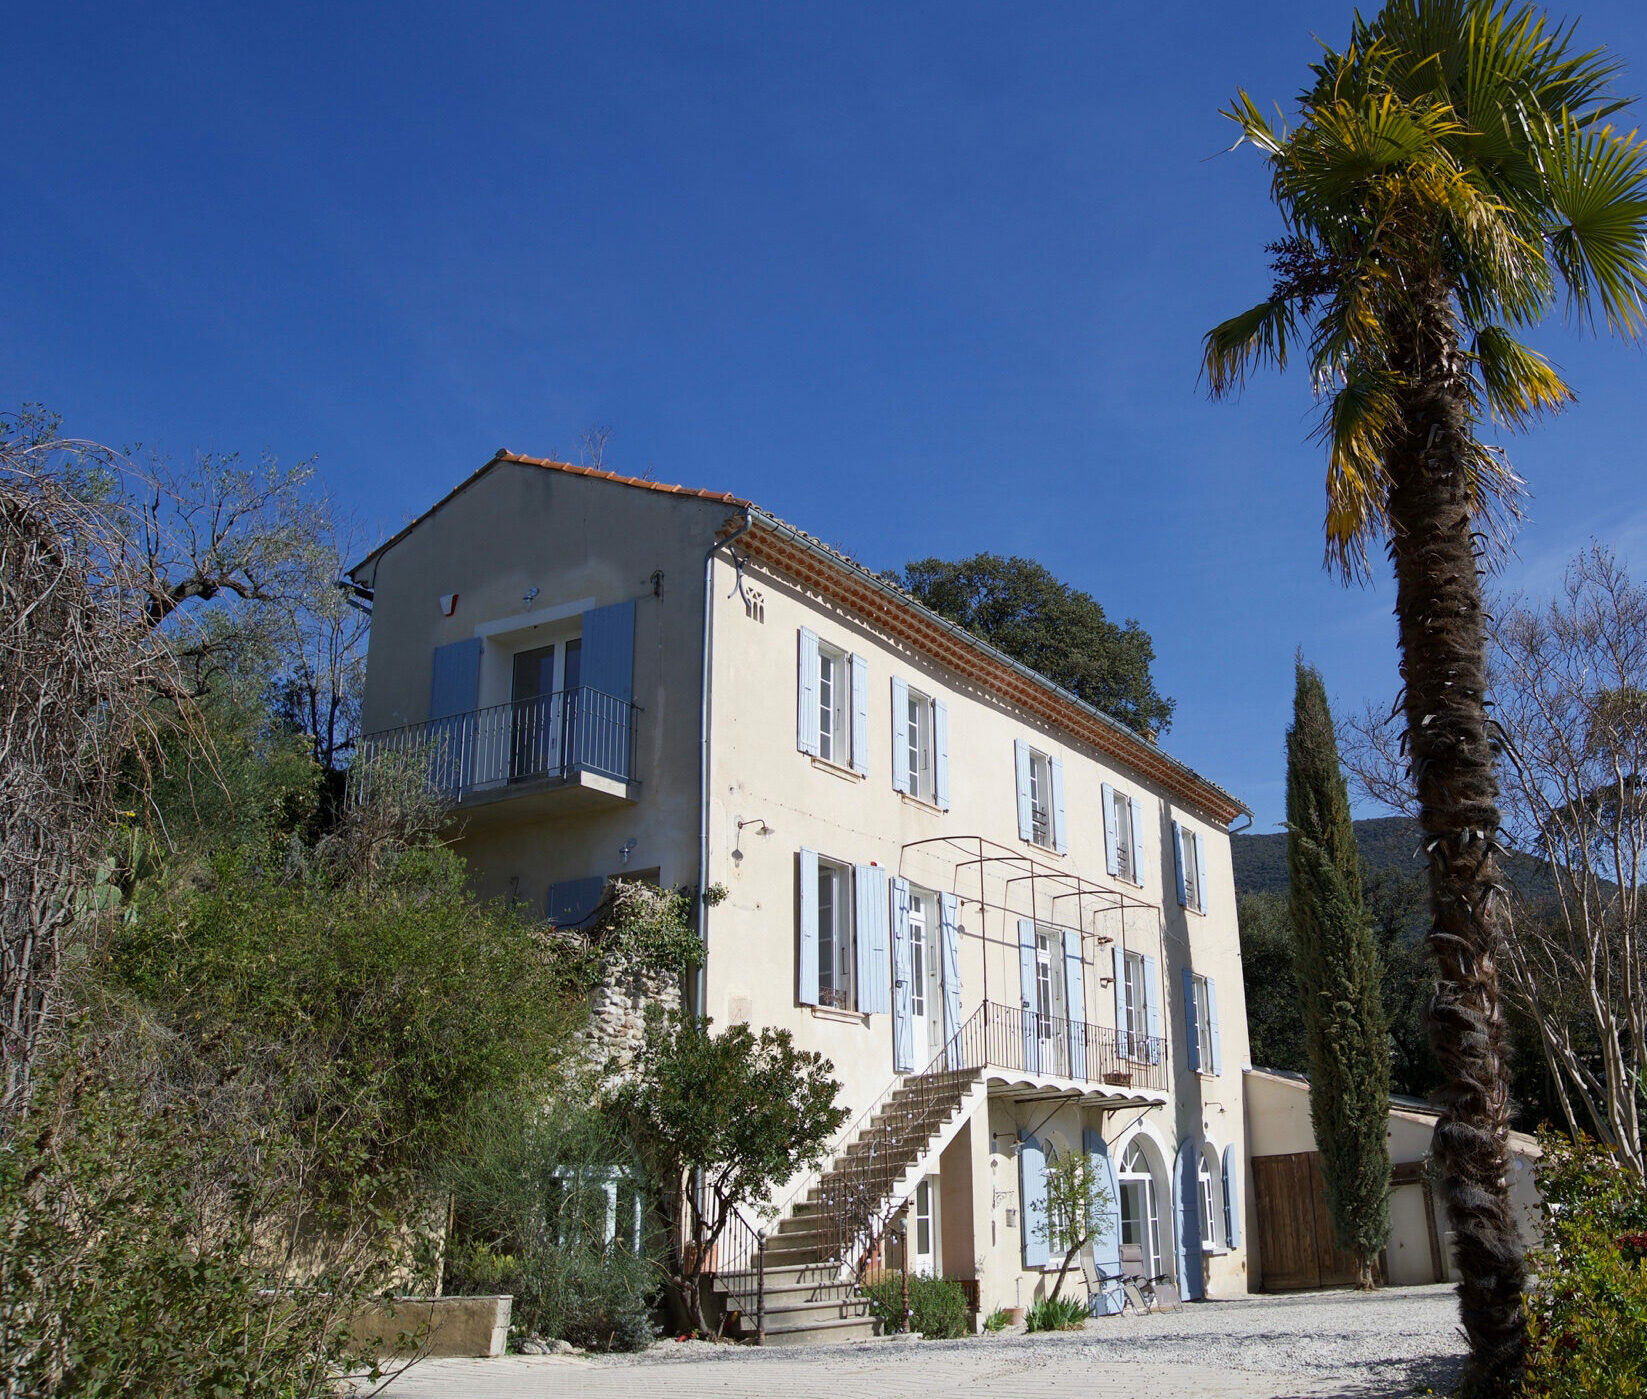 Aussenansicht Maison10 Retreat in der Provence